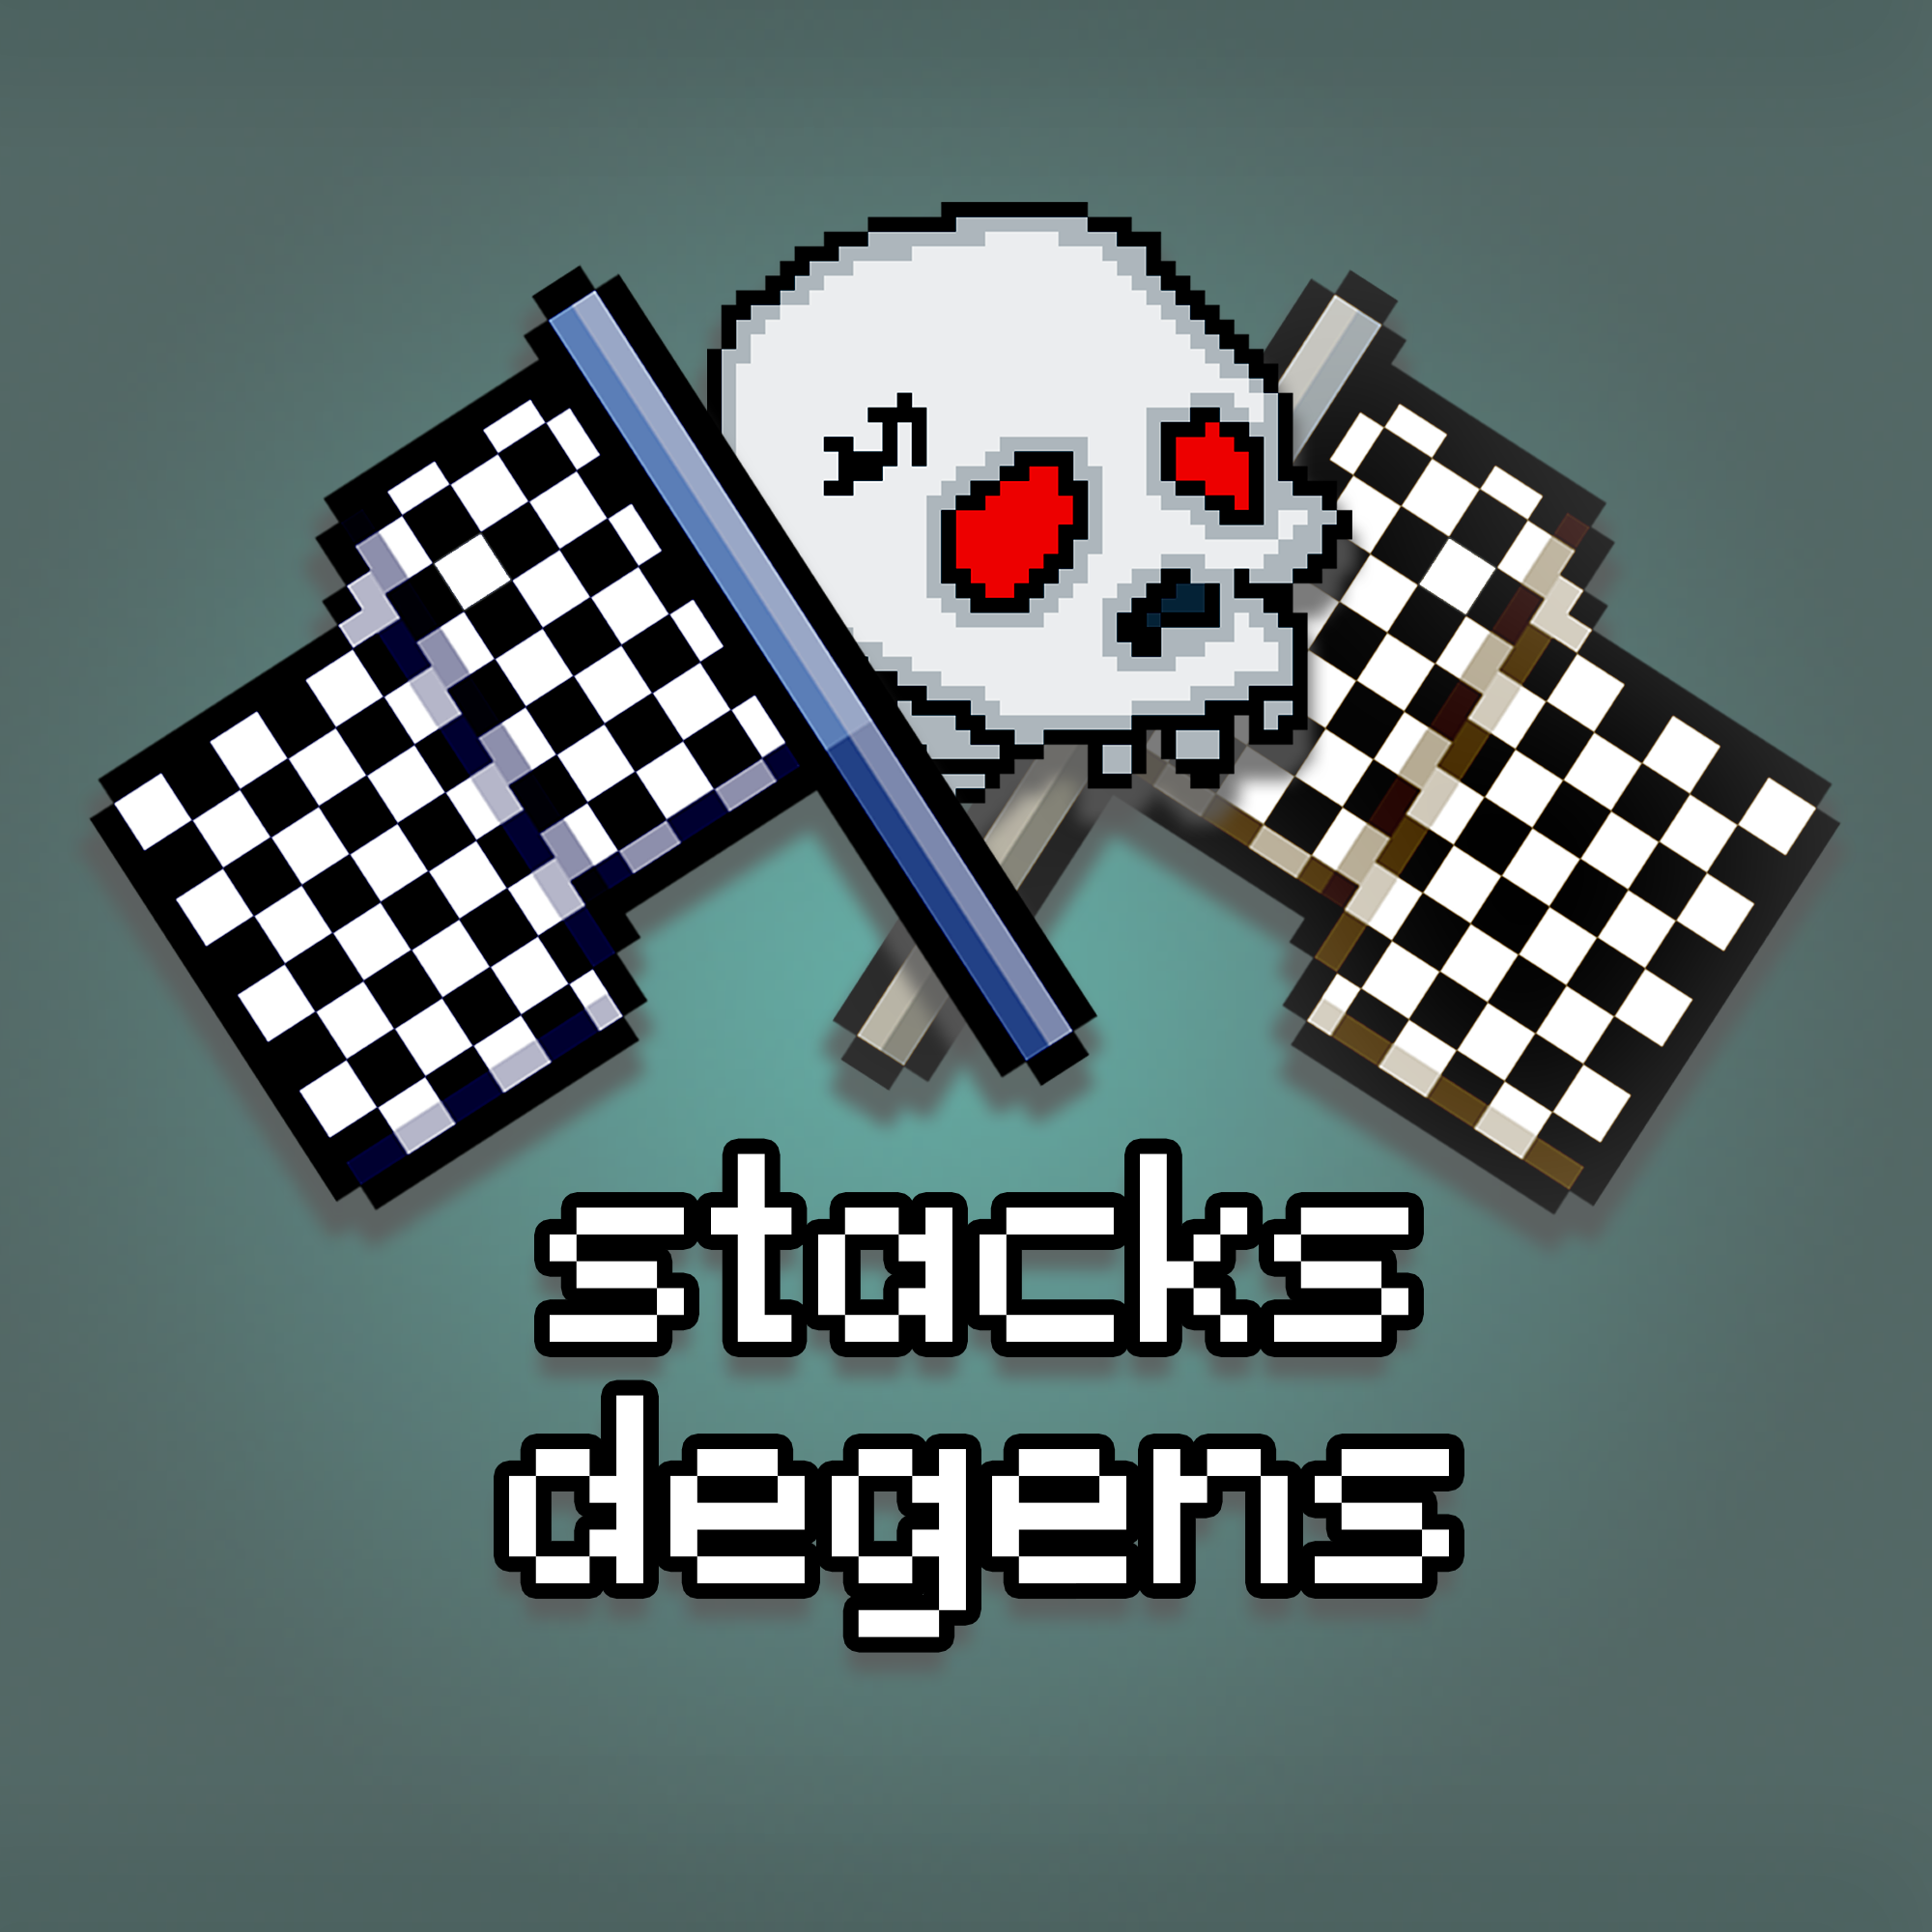 StacksDegens logo